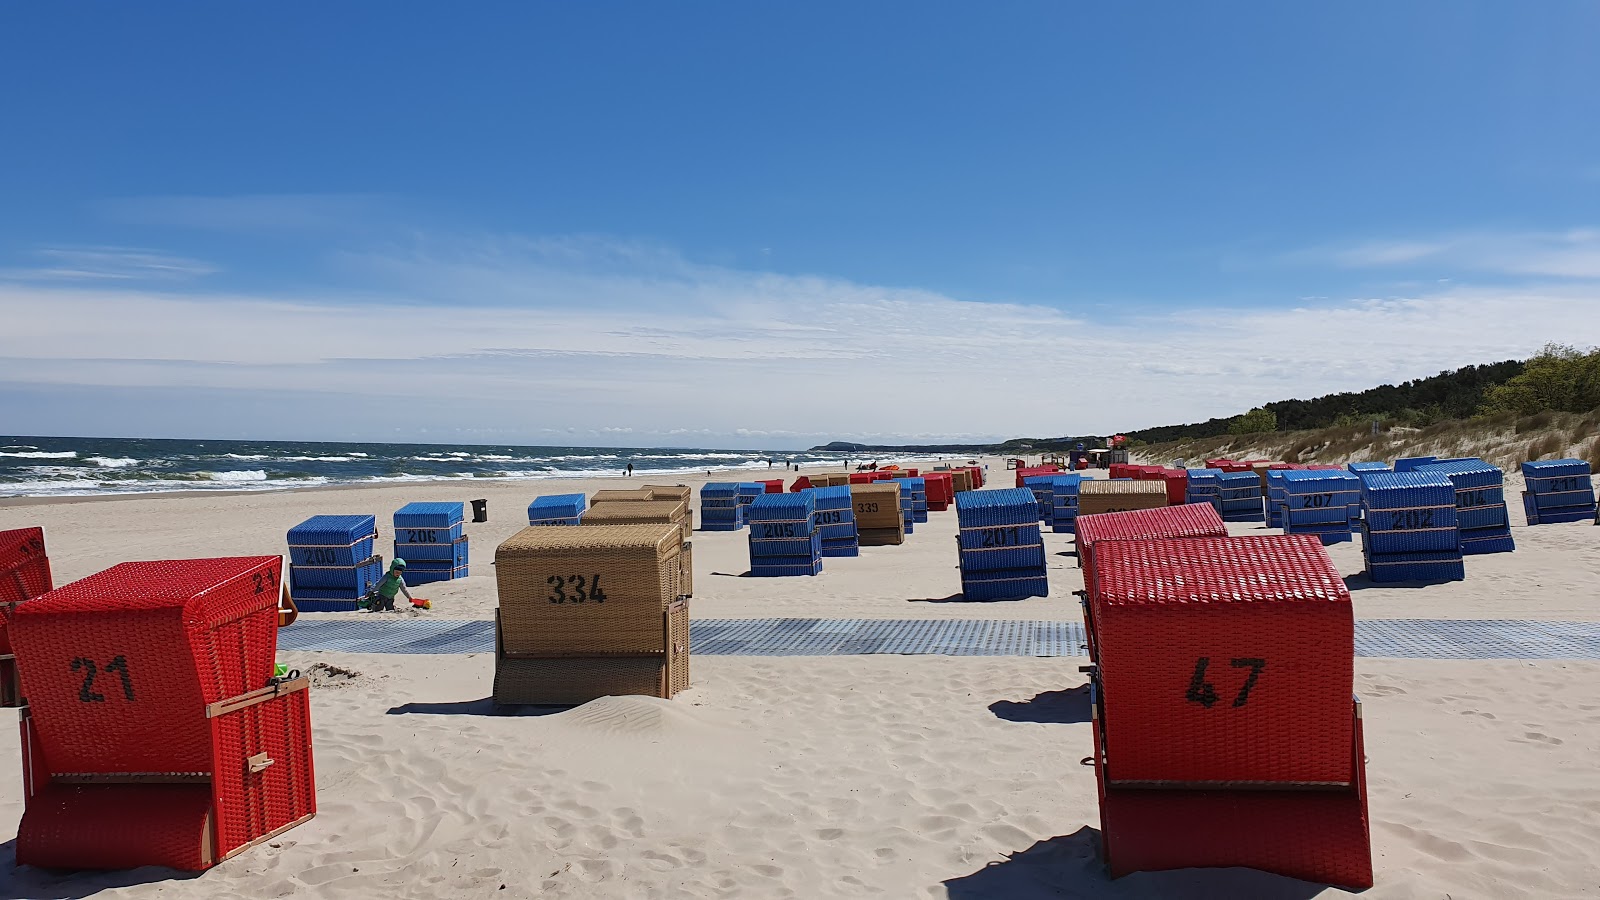 Foto de Trassenheide strand - lugar popular entre los conocedores del relax